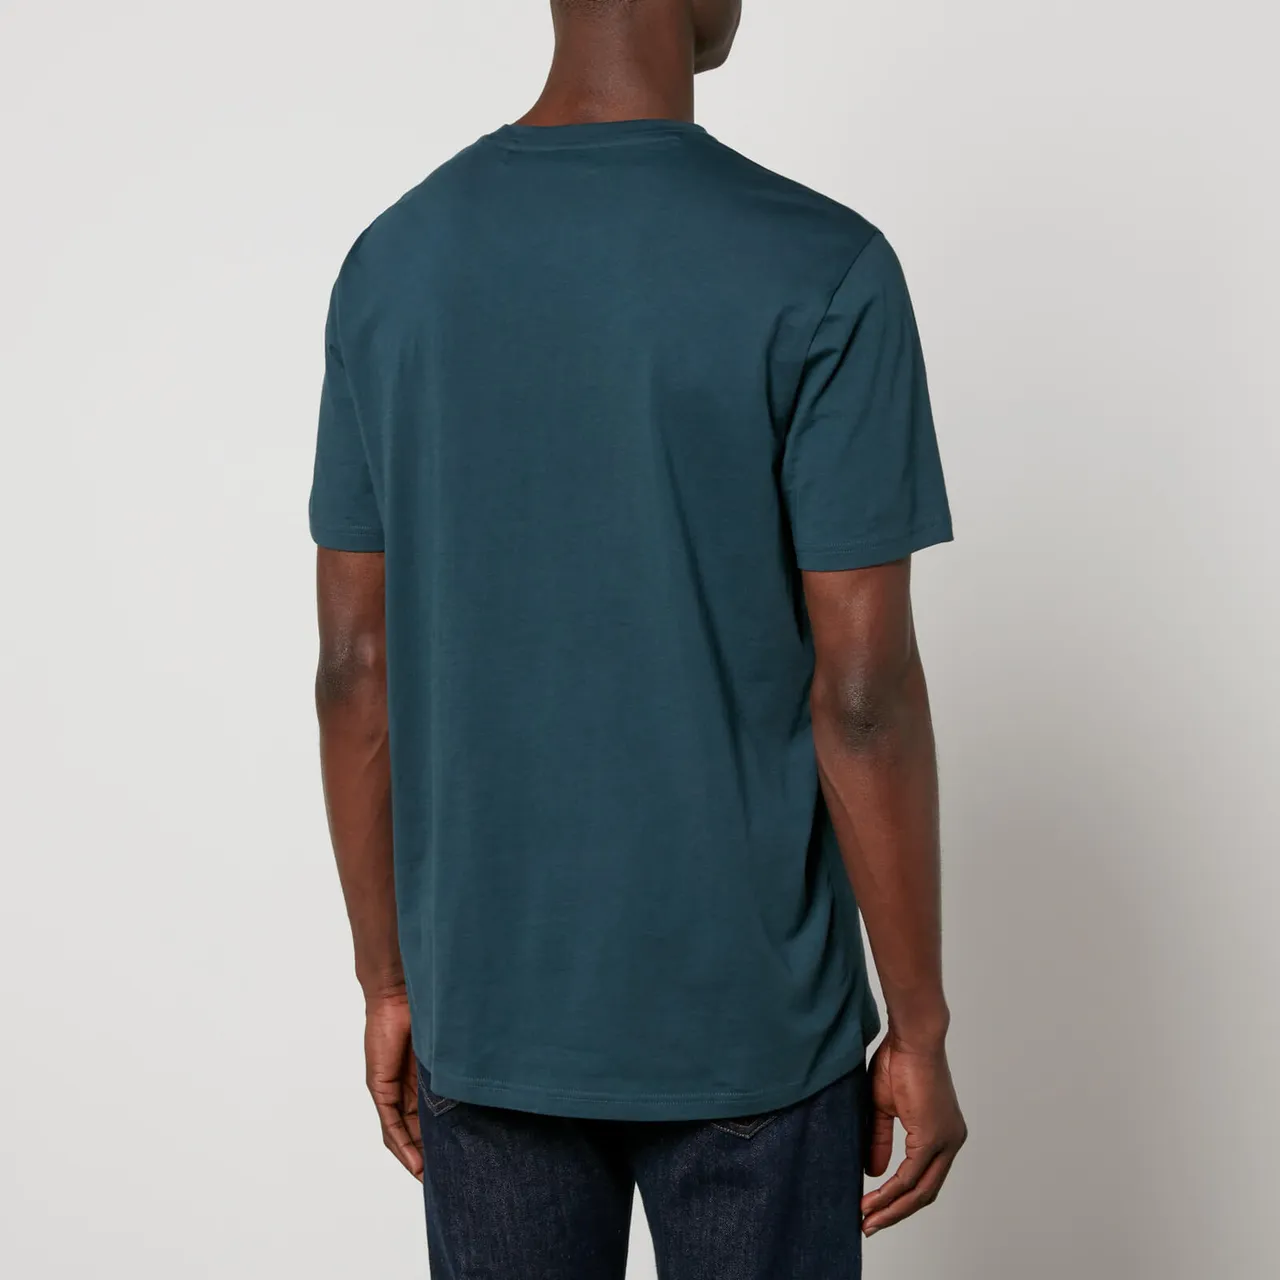 Hugo Boss BOSS Orange Thinking Cotton-Jersey T-Shirt 50481923-388 - Preise  vergleichen